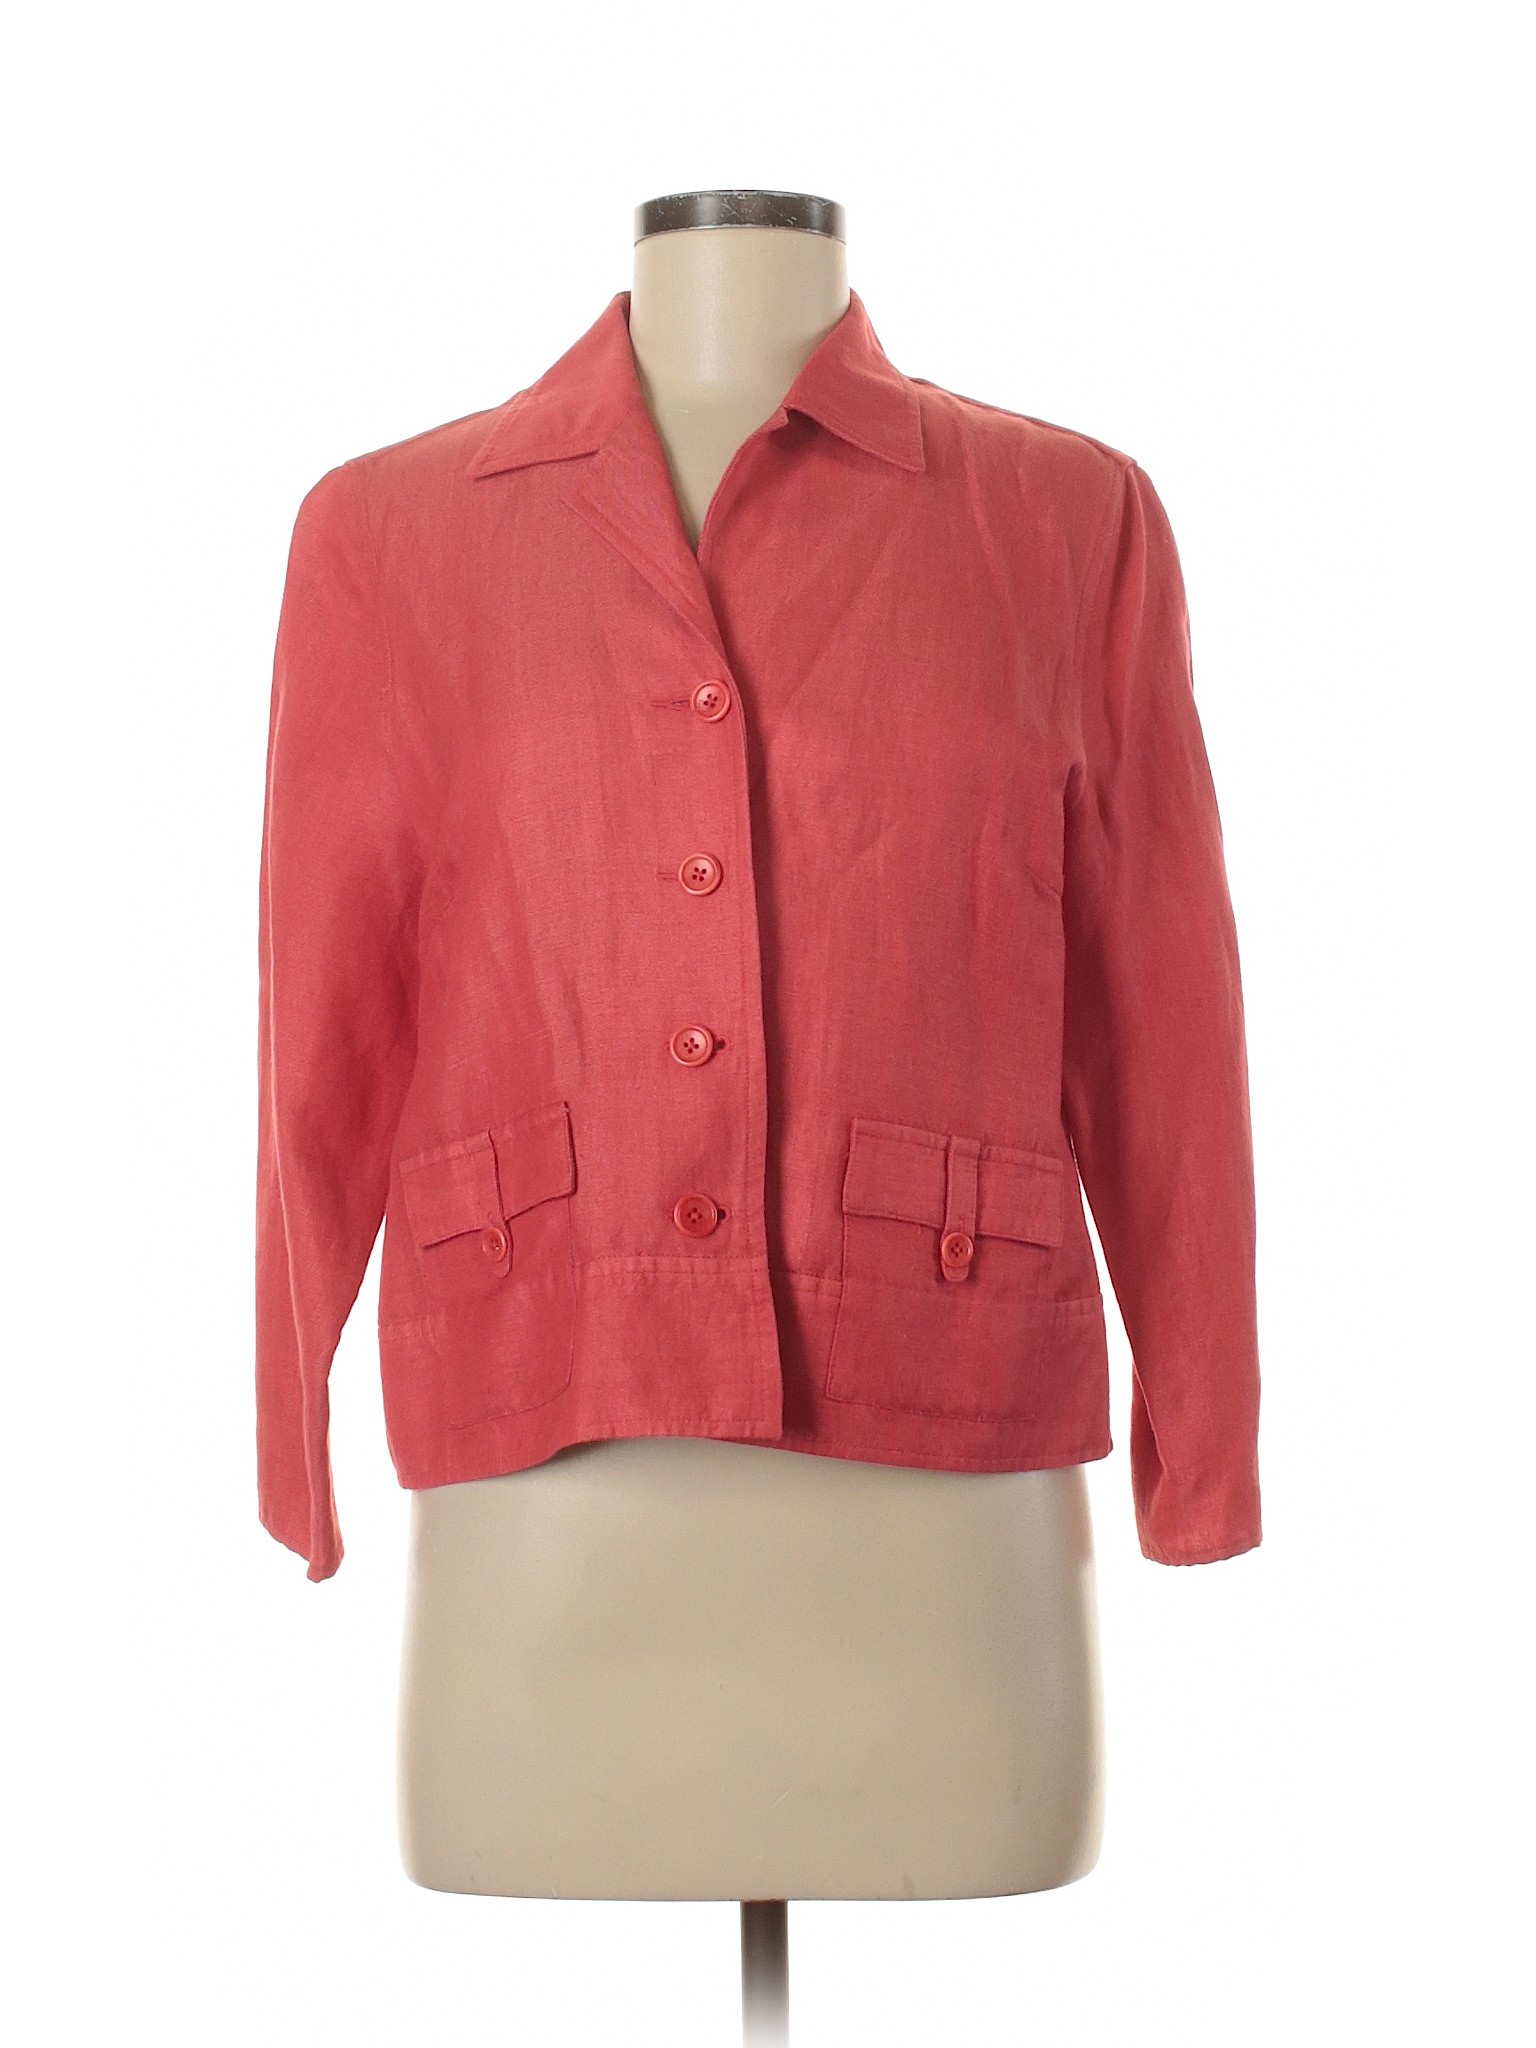 Talbots Women Red Jacket 8 | eBay